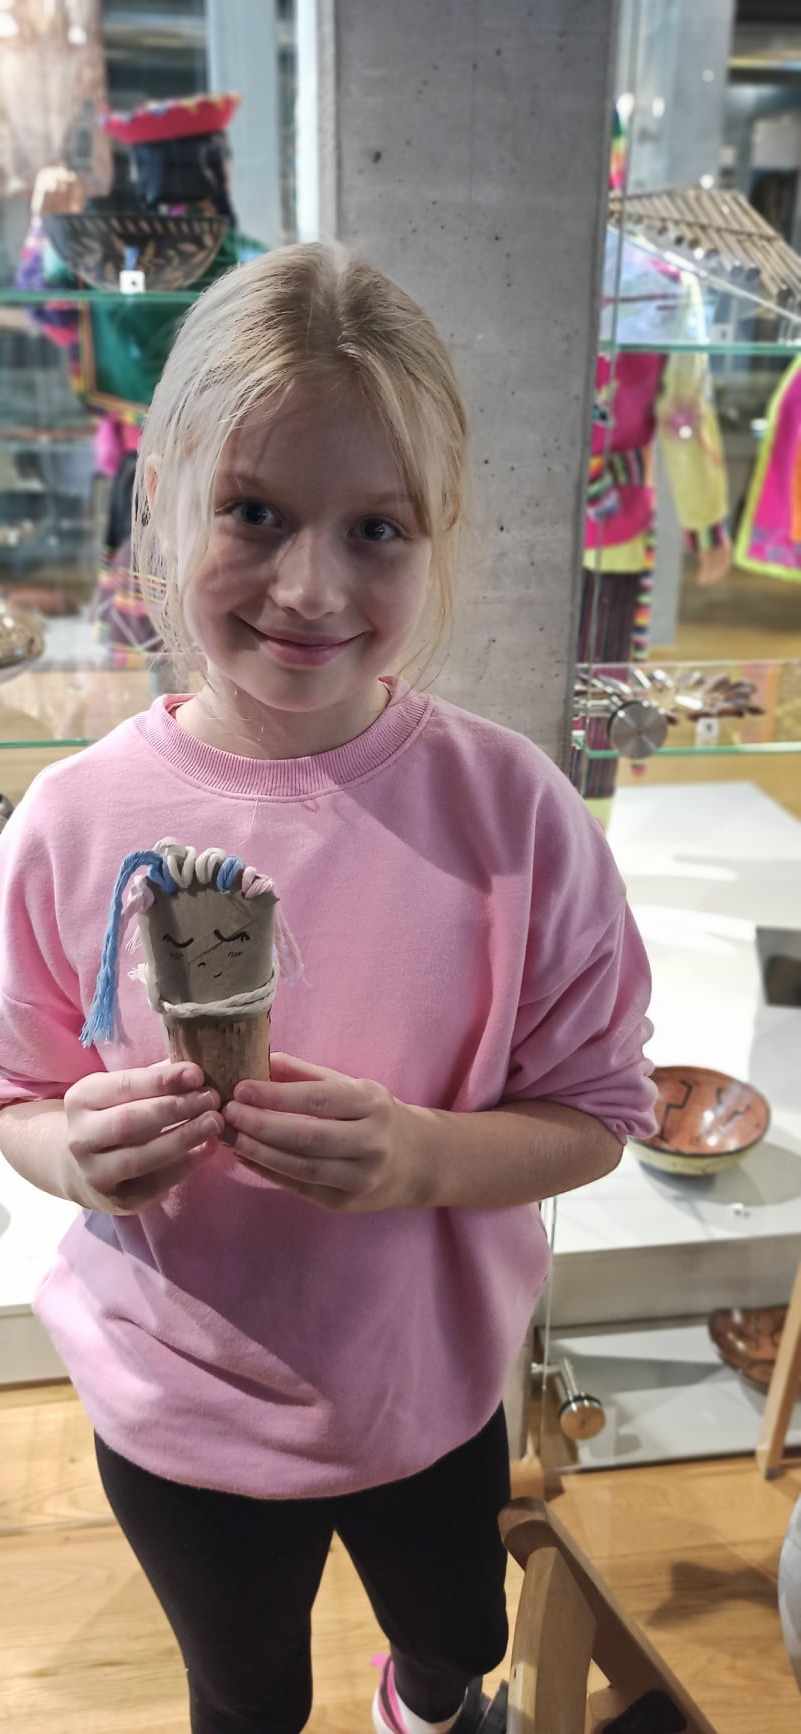  Lalka z upcyklingu – na zdjęciu widać uśmiechniętą dziewczynkę w różowej bluzie, która trzyma w ręku własnoręcznie wykonaną laleczkę. W tle muzealne gabloty z ekspomatami.